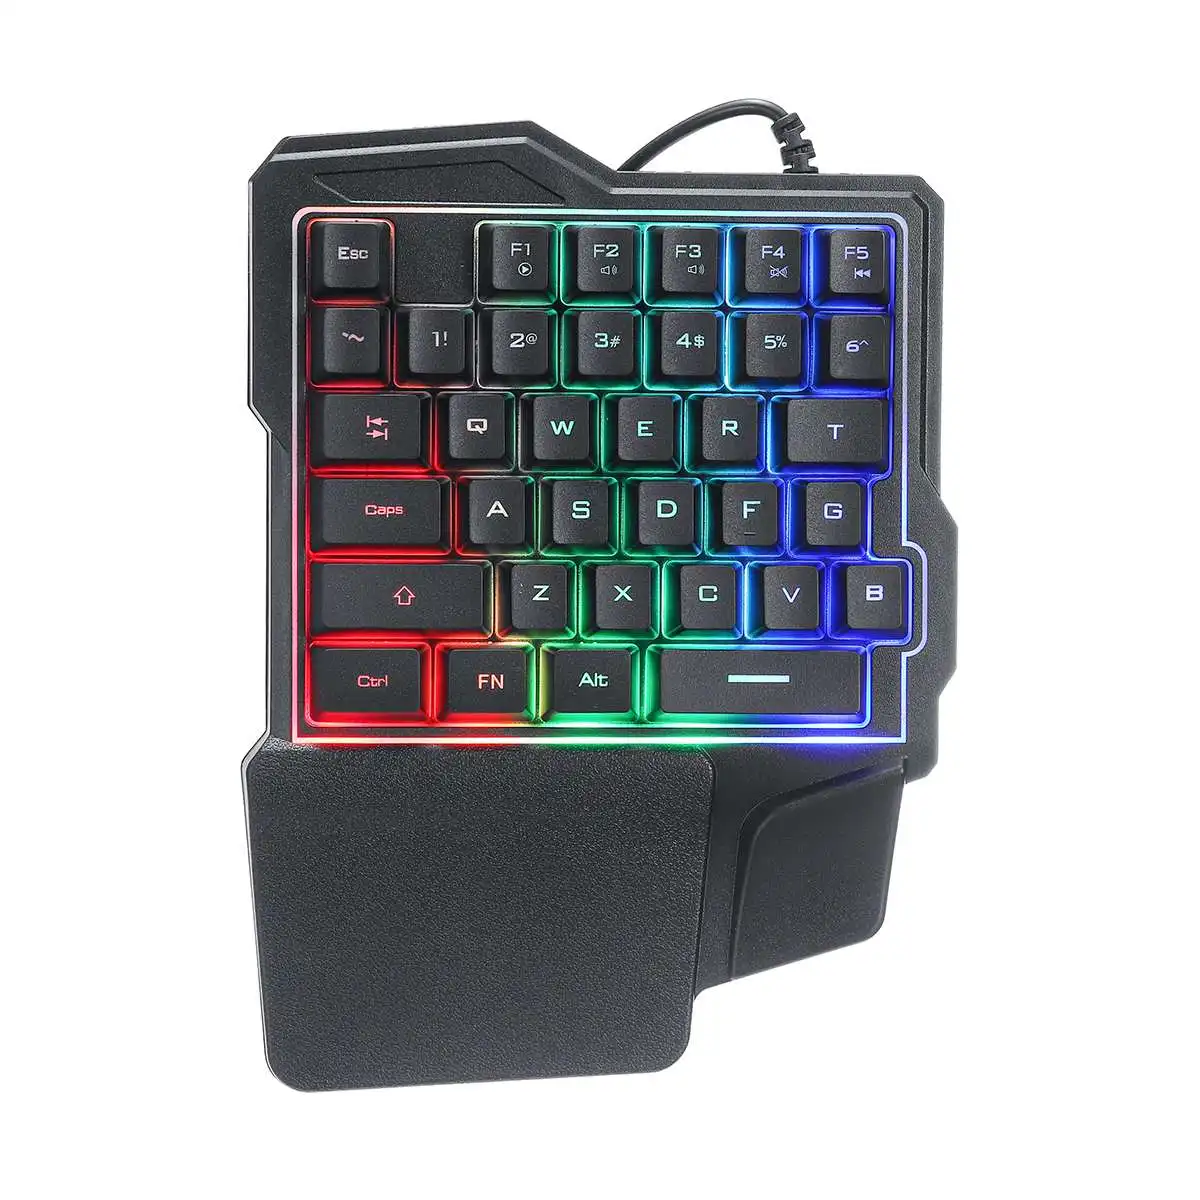 Механическая игровая клавиатура с одной рукой, 35 клавиш, светодиодный, подсветка клавиатуры для мобильных игр, для смартфонов на базе Android